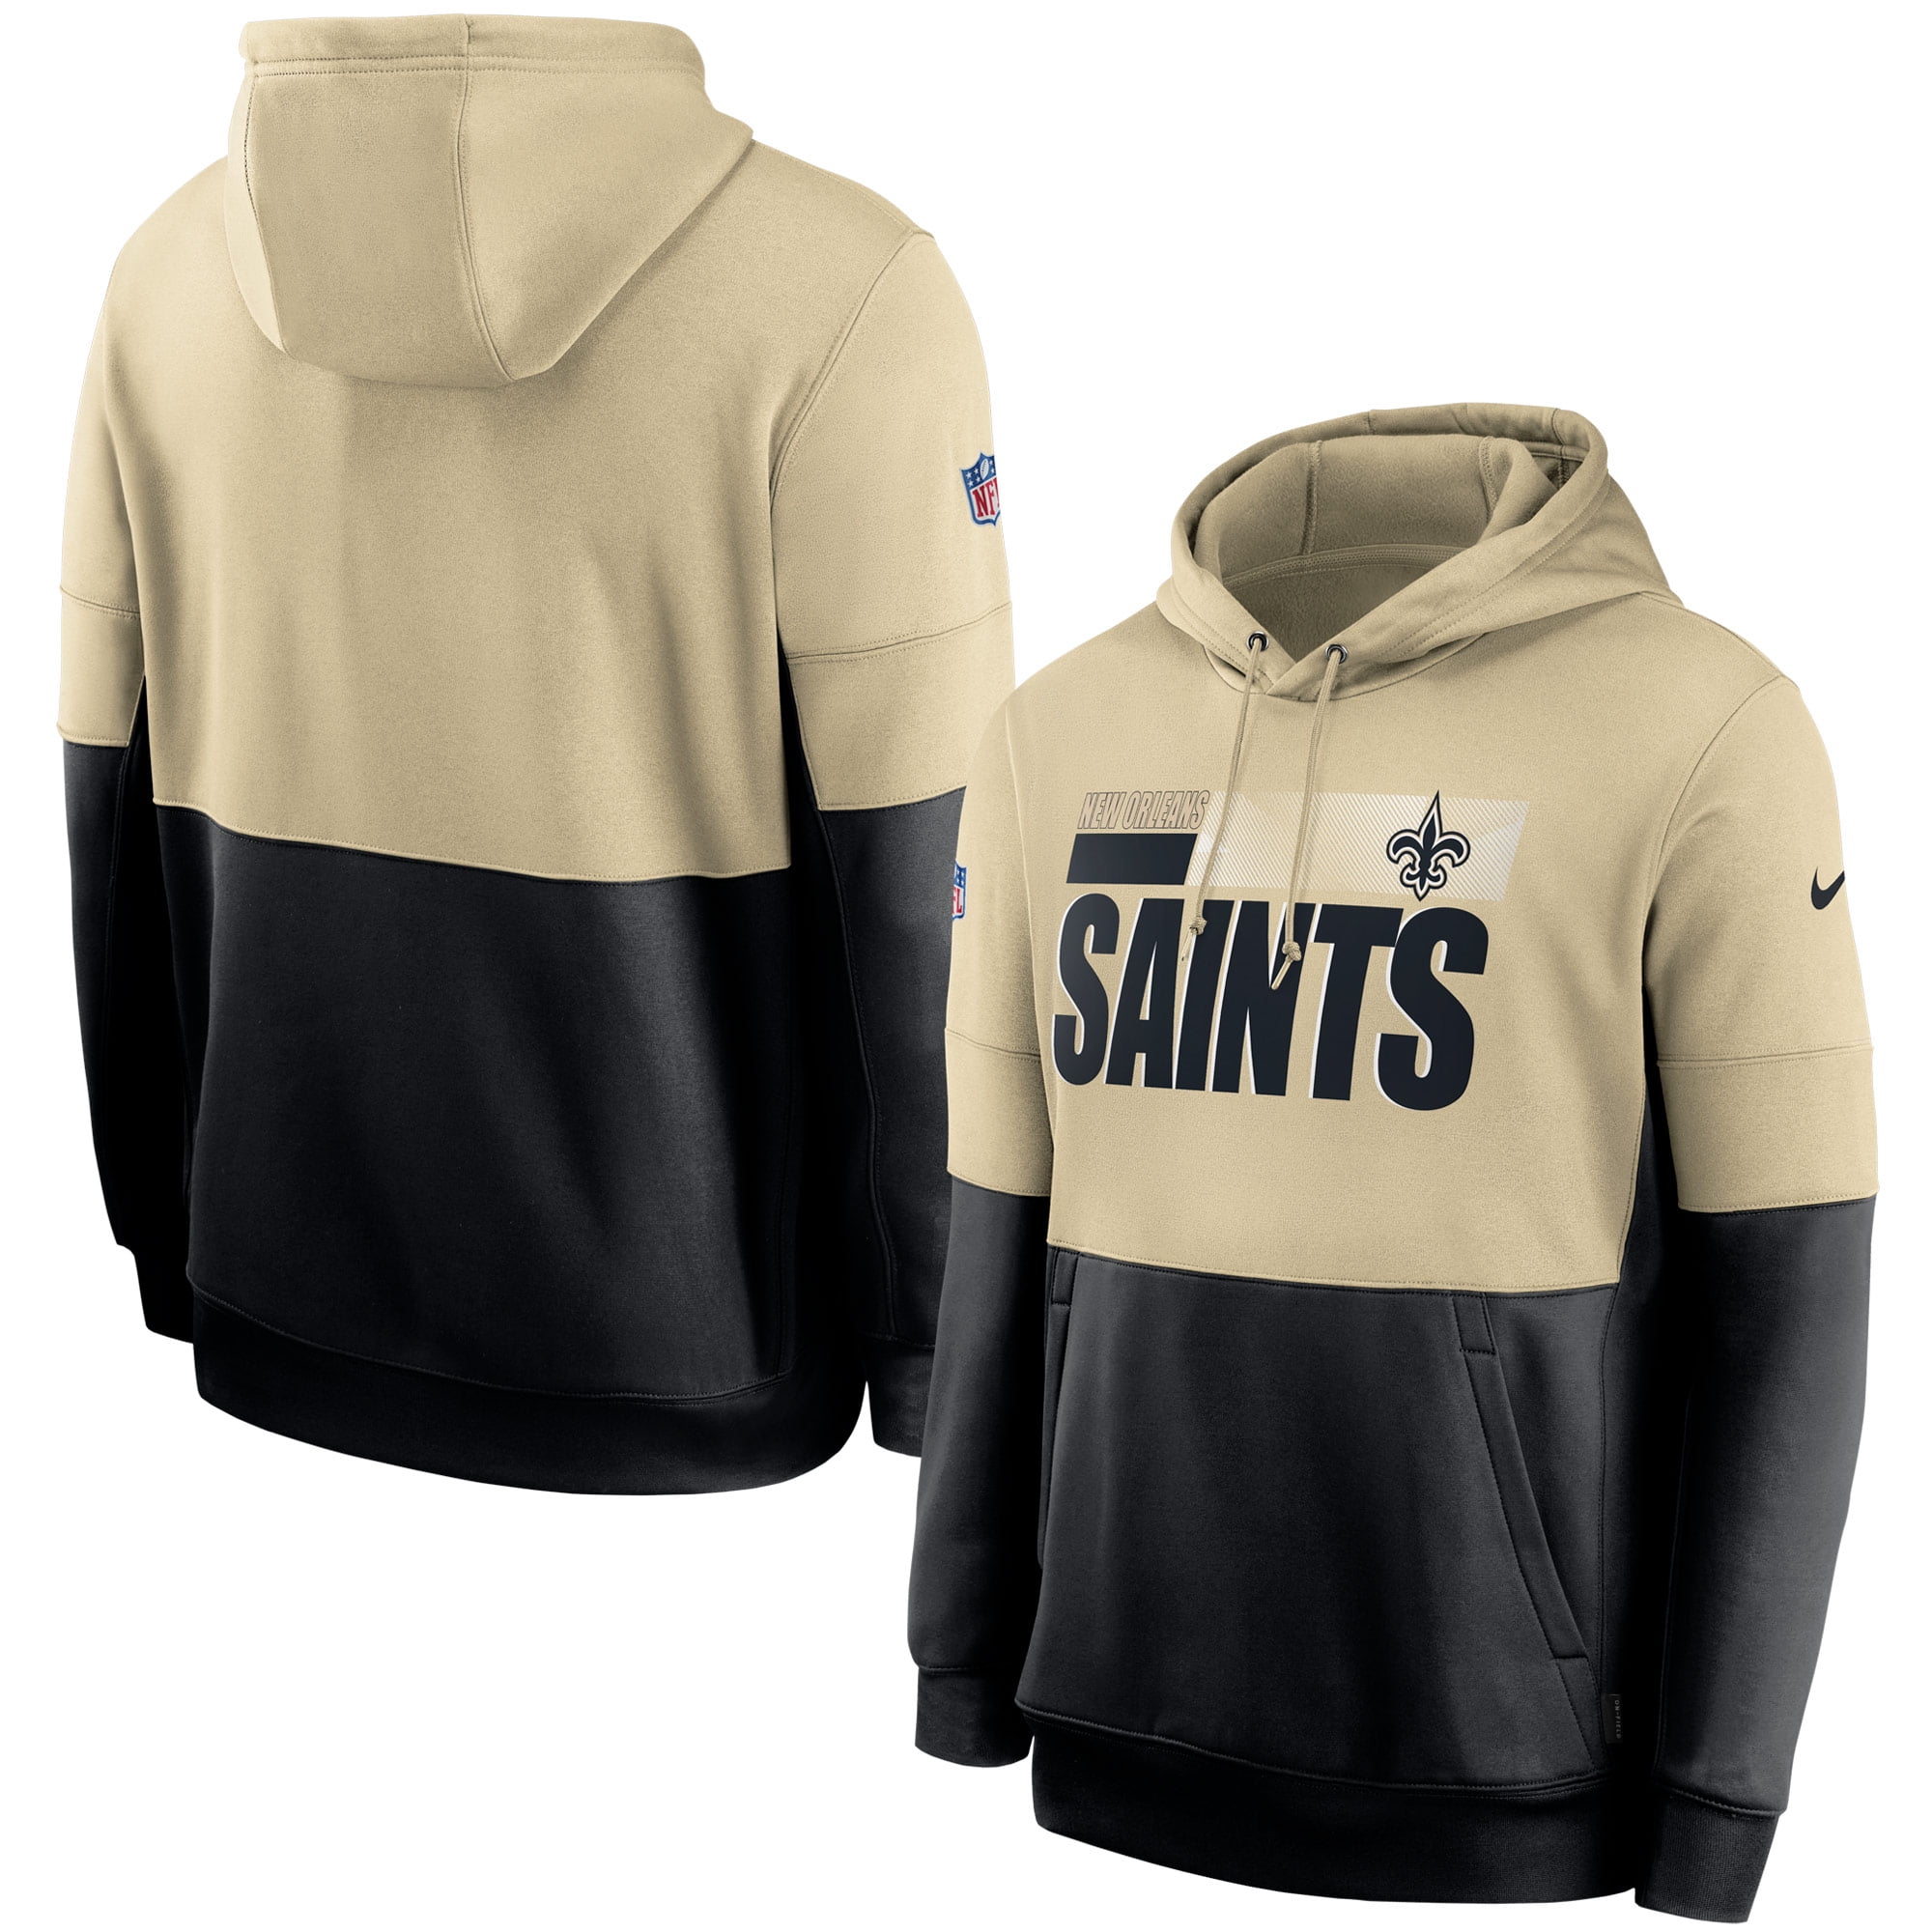 saints hoodie nike